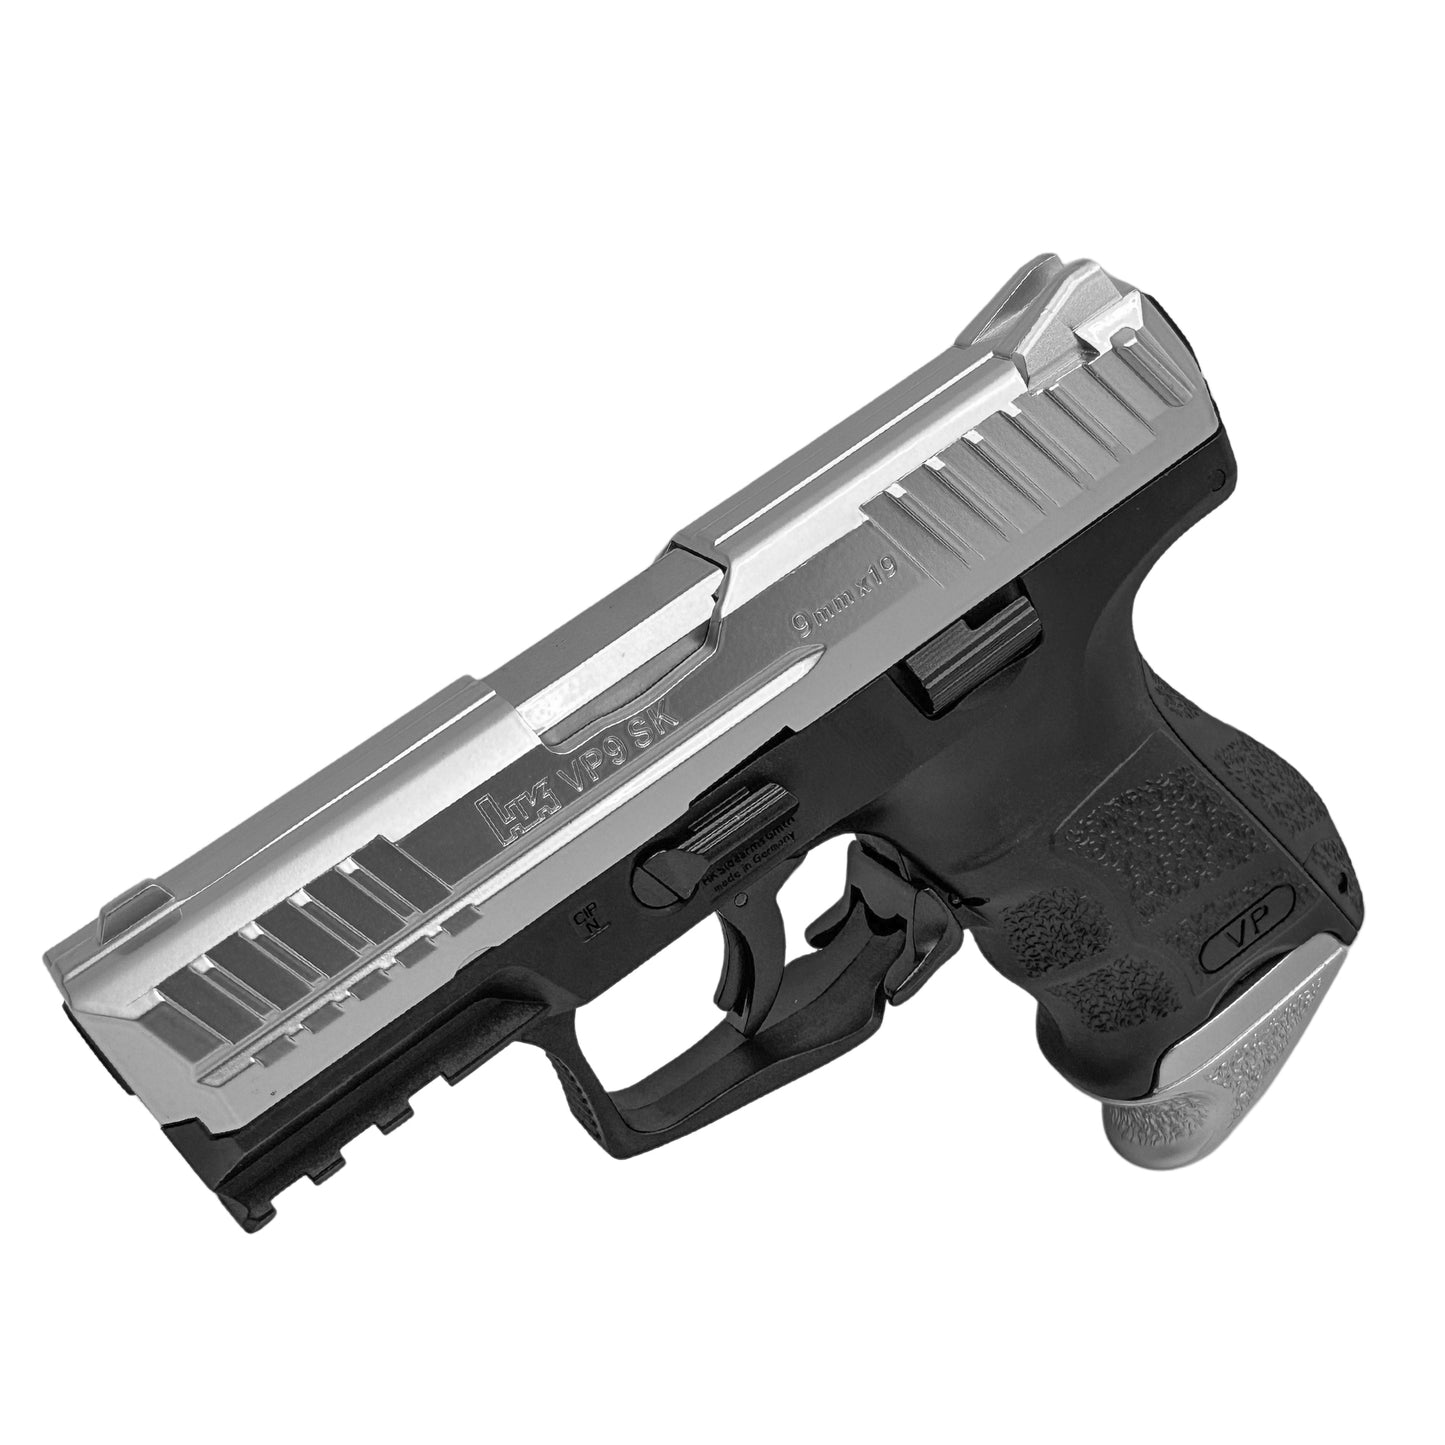 HK VP9 SK Metal Manual Pistol - Gel Blaster